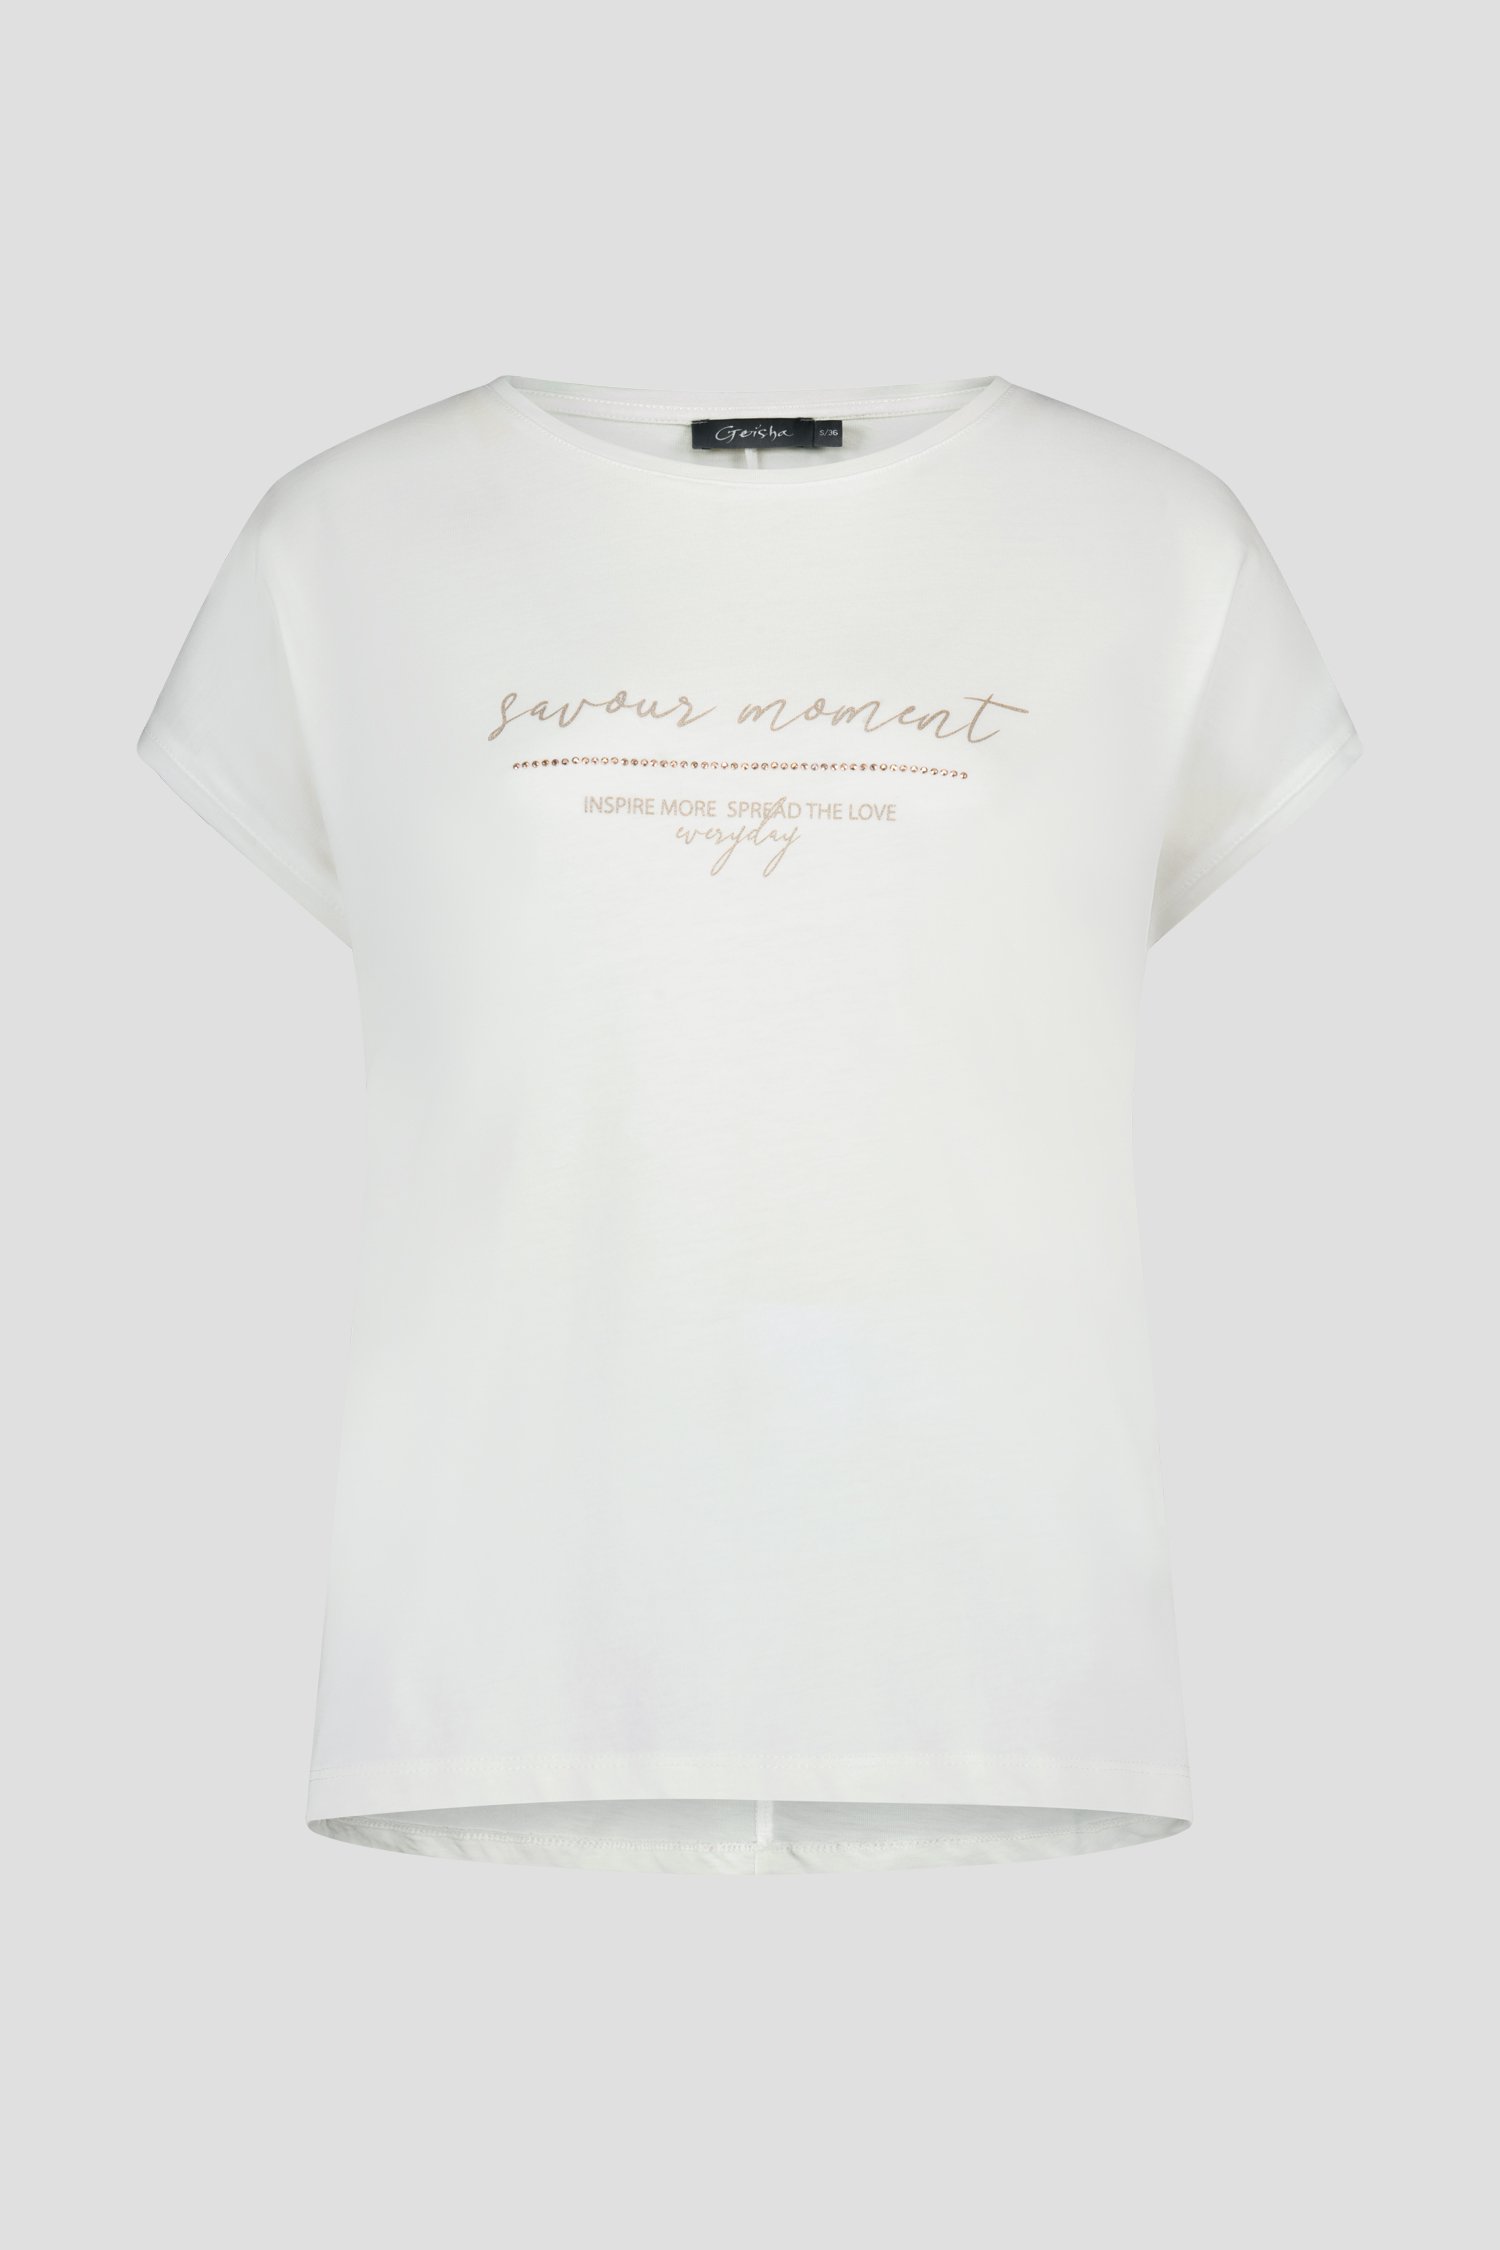 Worden gemeenschap bungeejumpen Wit T-shirt met opschrift van Geisha | 9876216 | e5